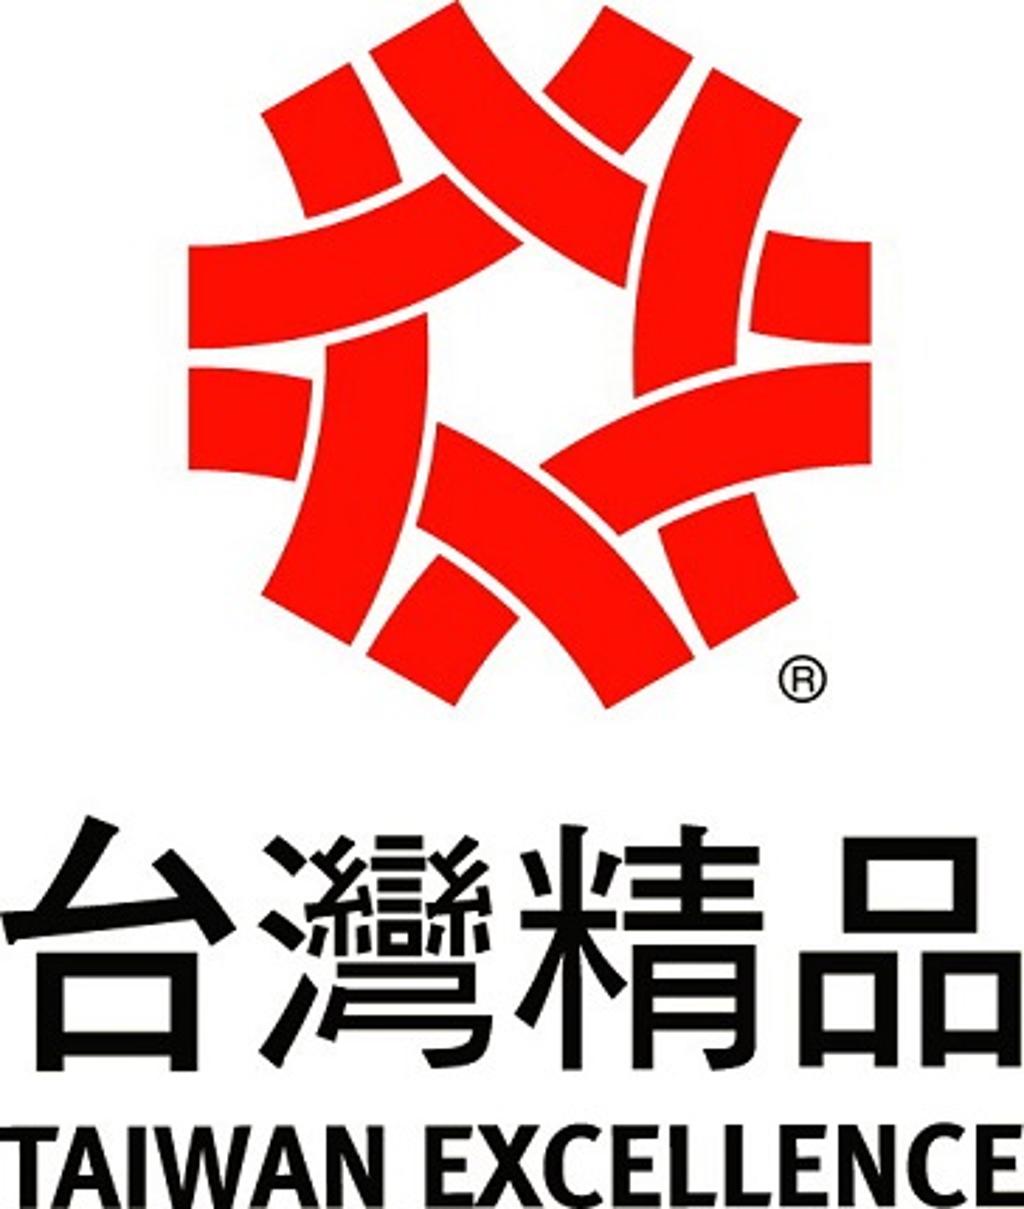 台灣精品標誌。圖╱外貿協會提供